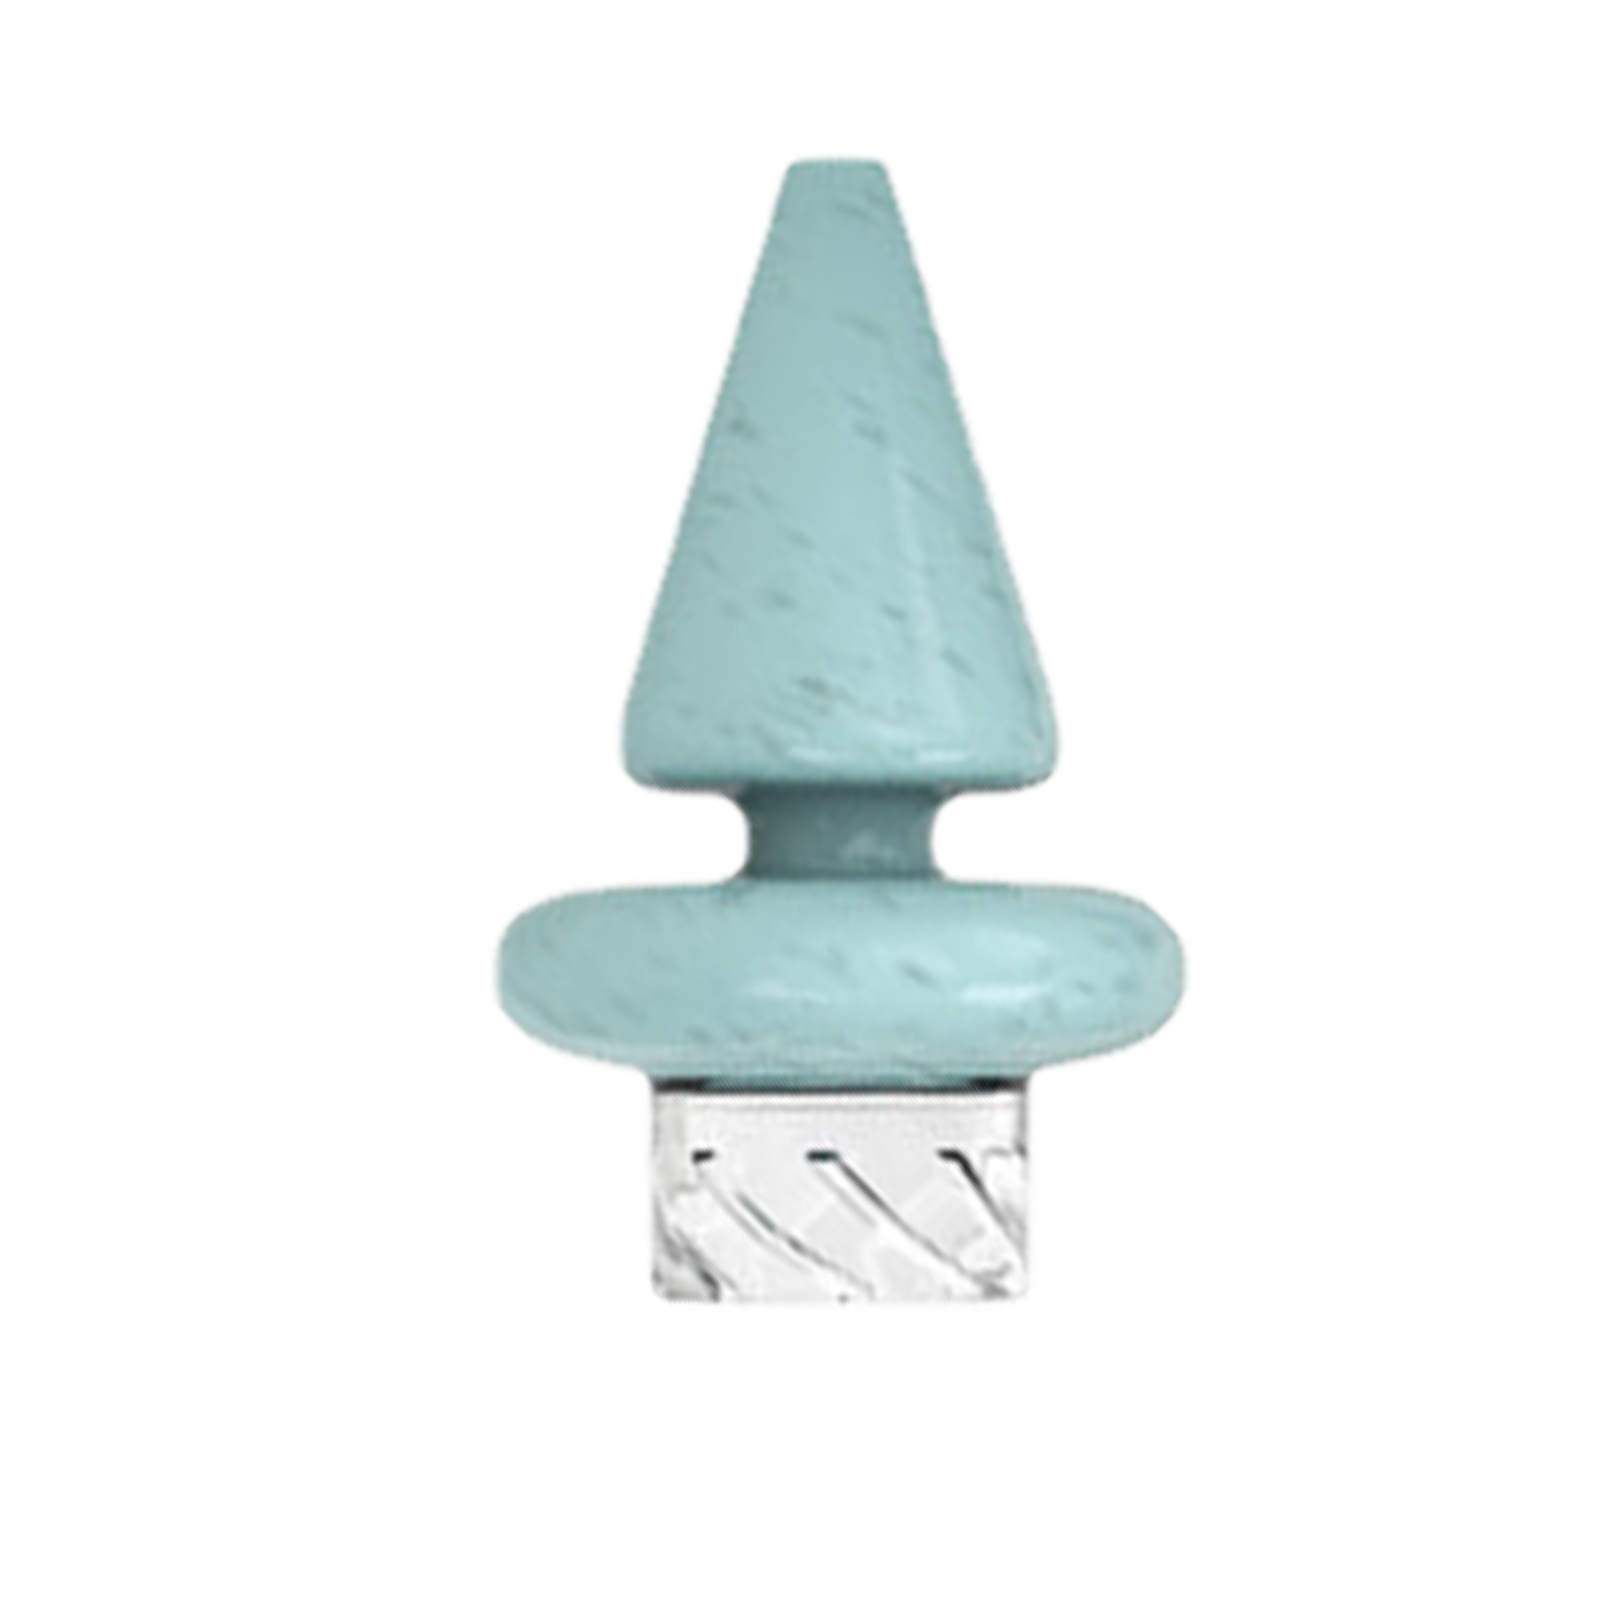 Triangle Spinner Glass Carb Cap - INHALCO